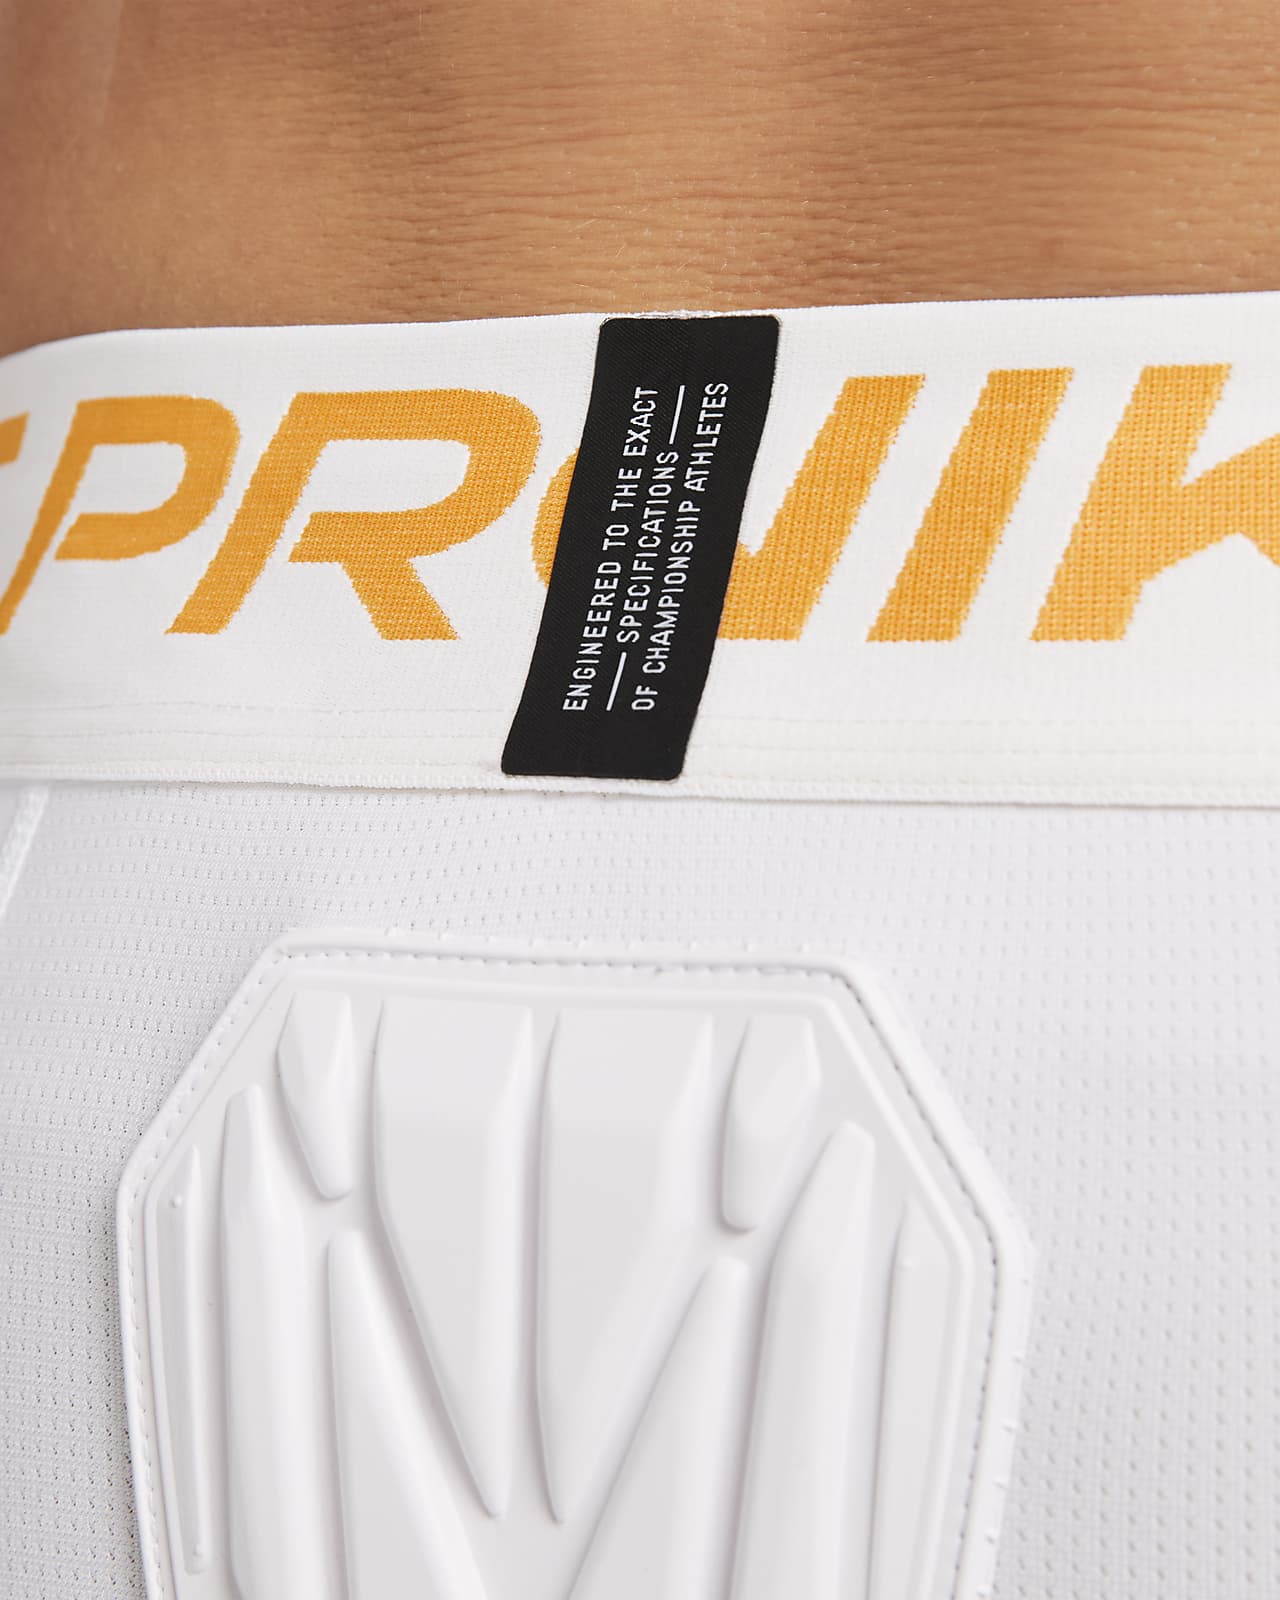 Nike Pro Hyperstrong Hardplate Football Girdle Shorts size 3XL